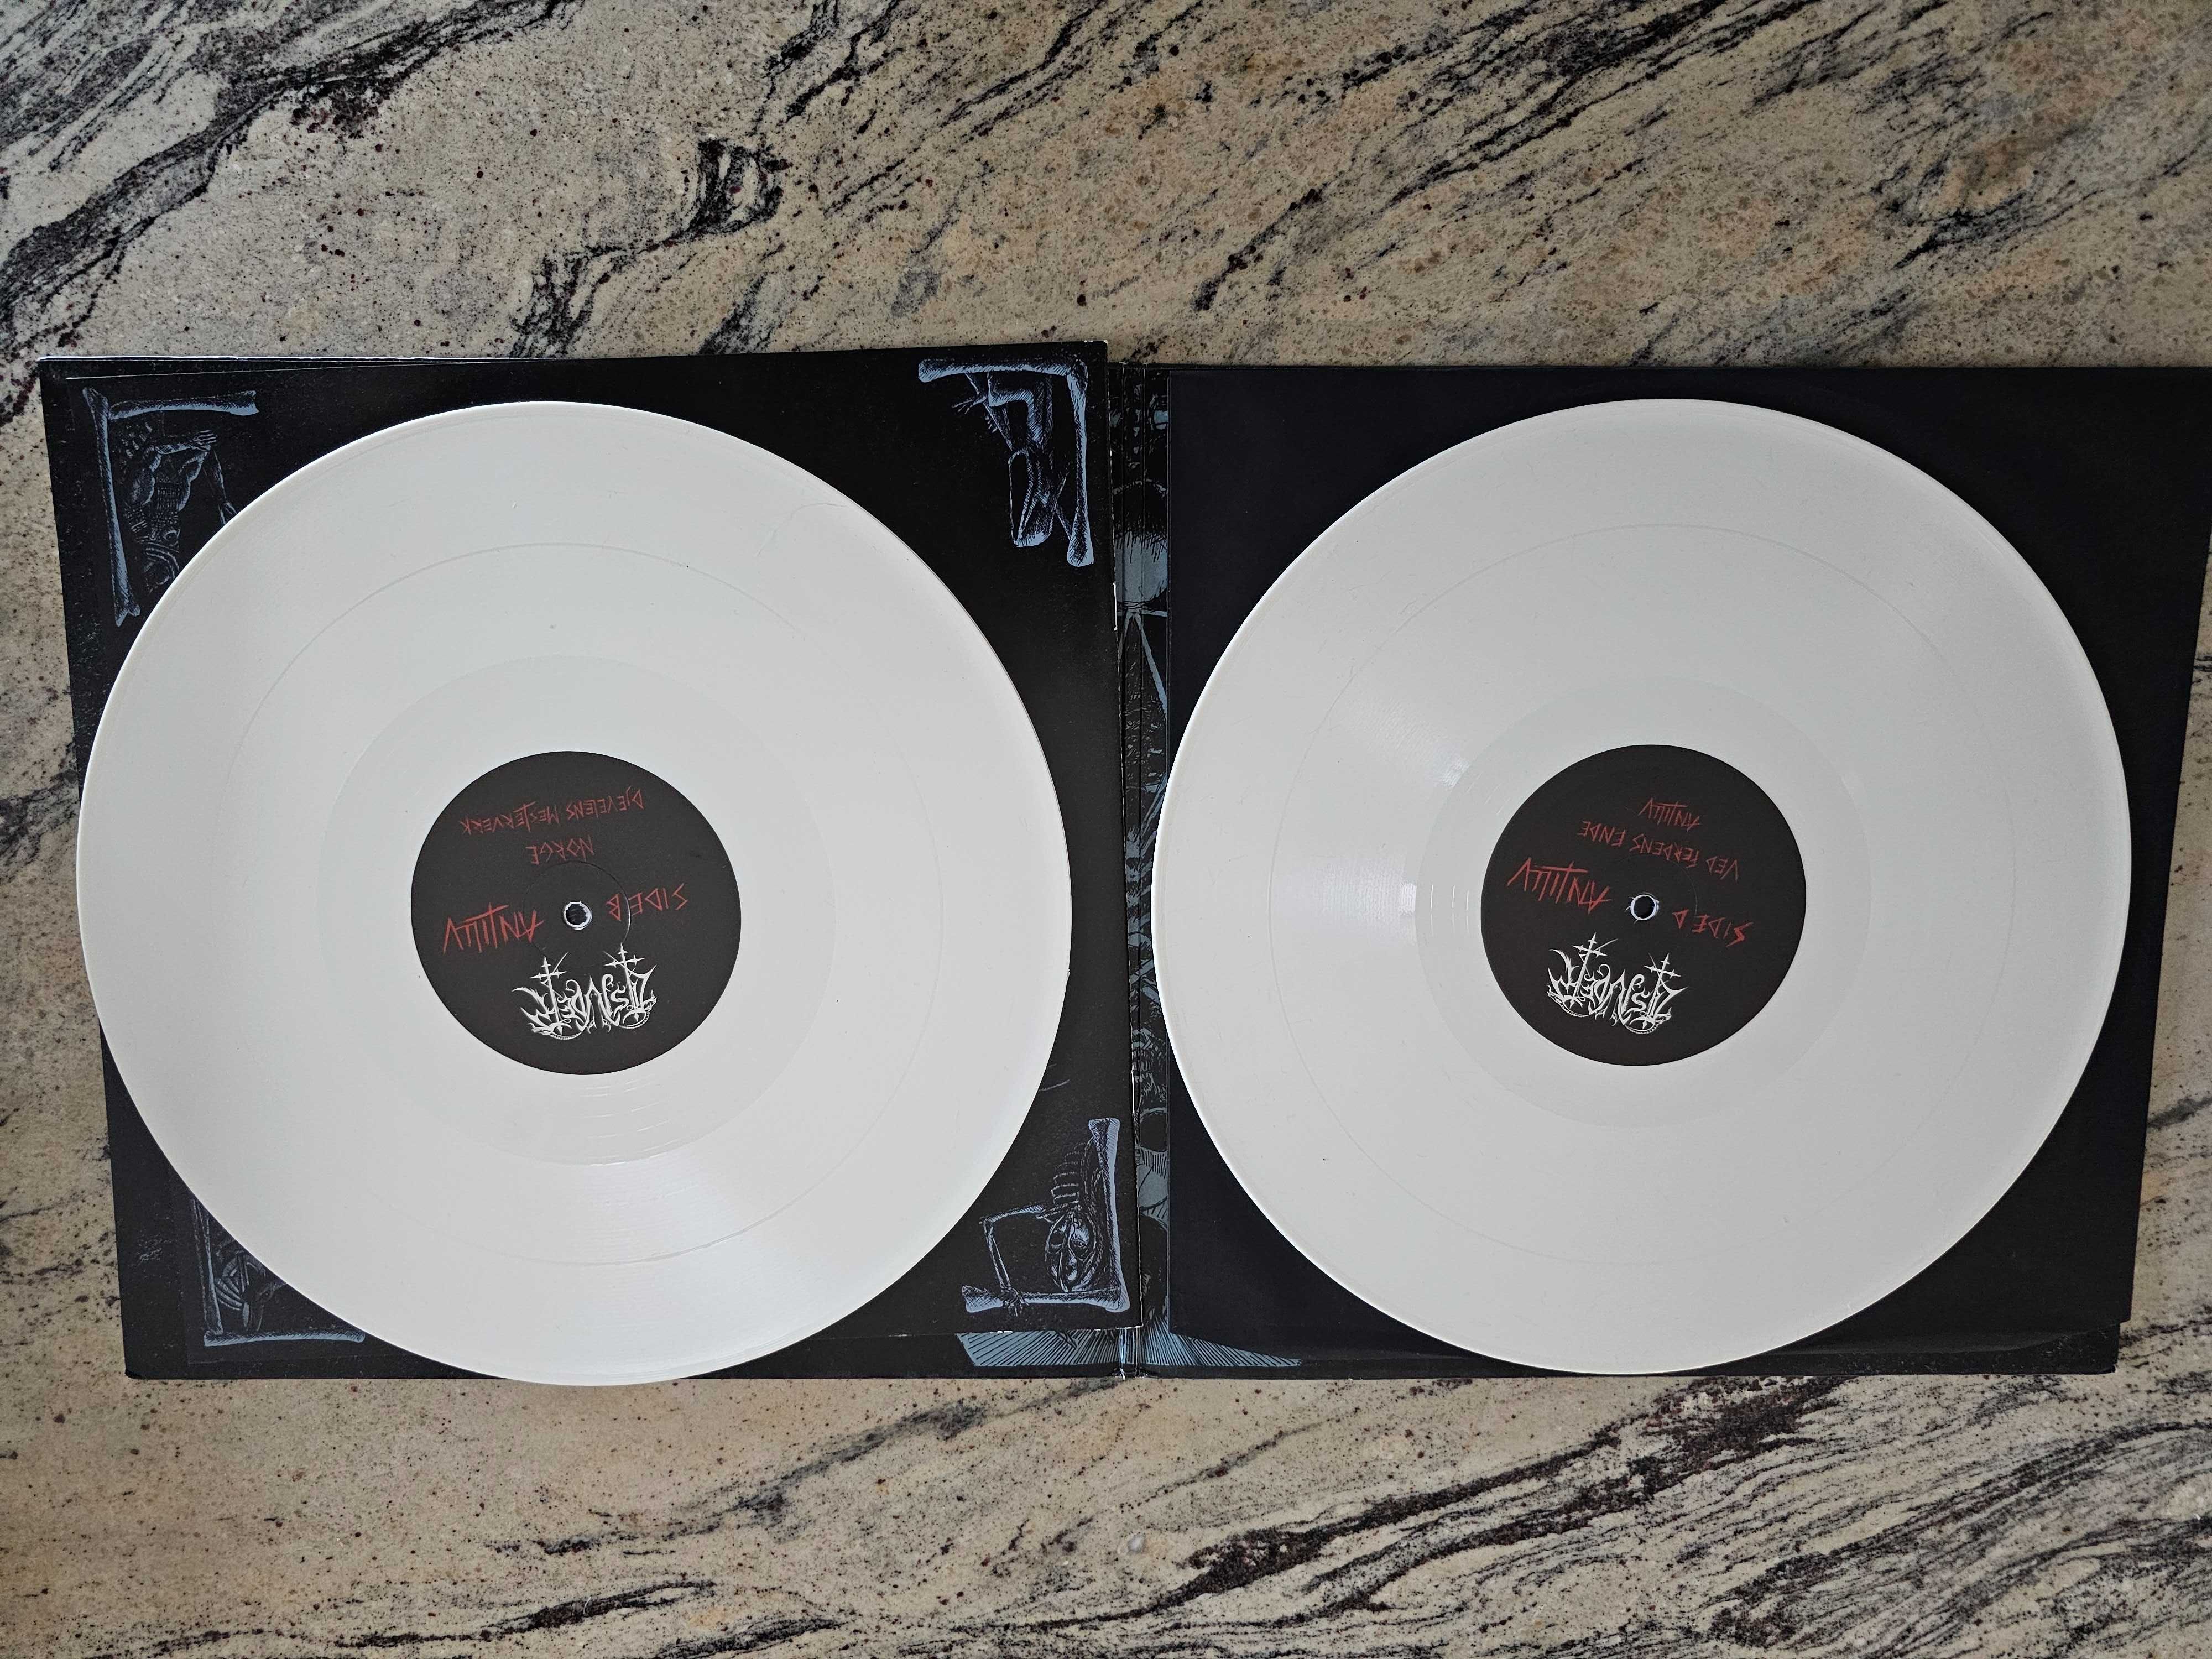 Płyta winylowa Tsjuder Antiliv white vinyl 2 LP limited